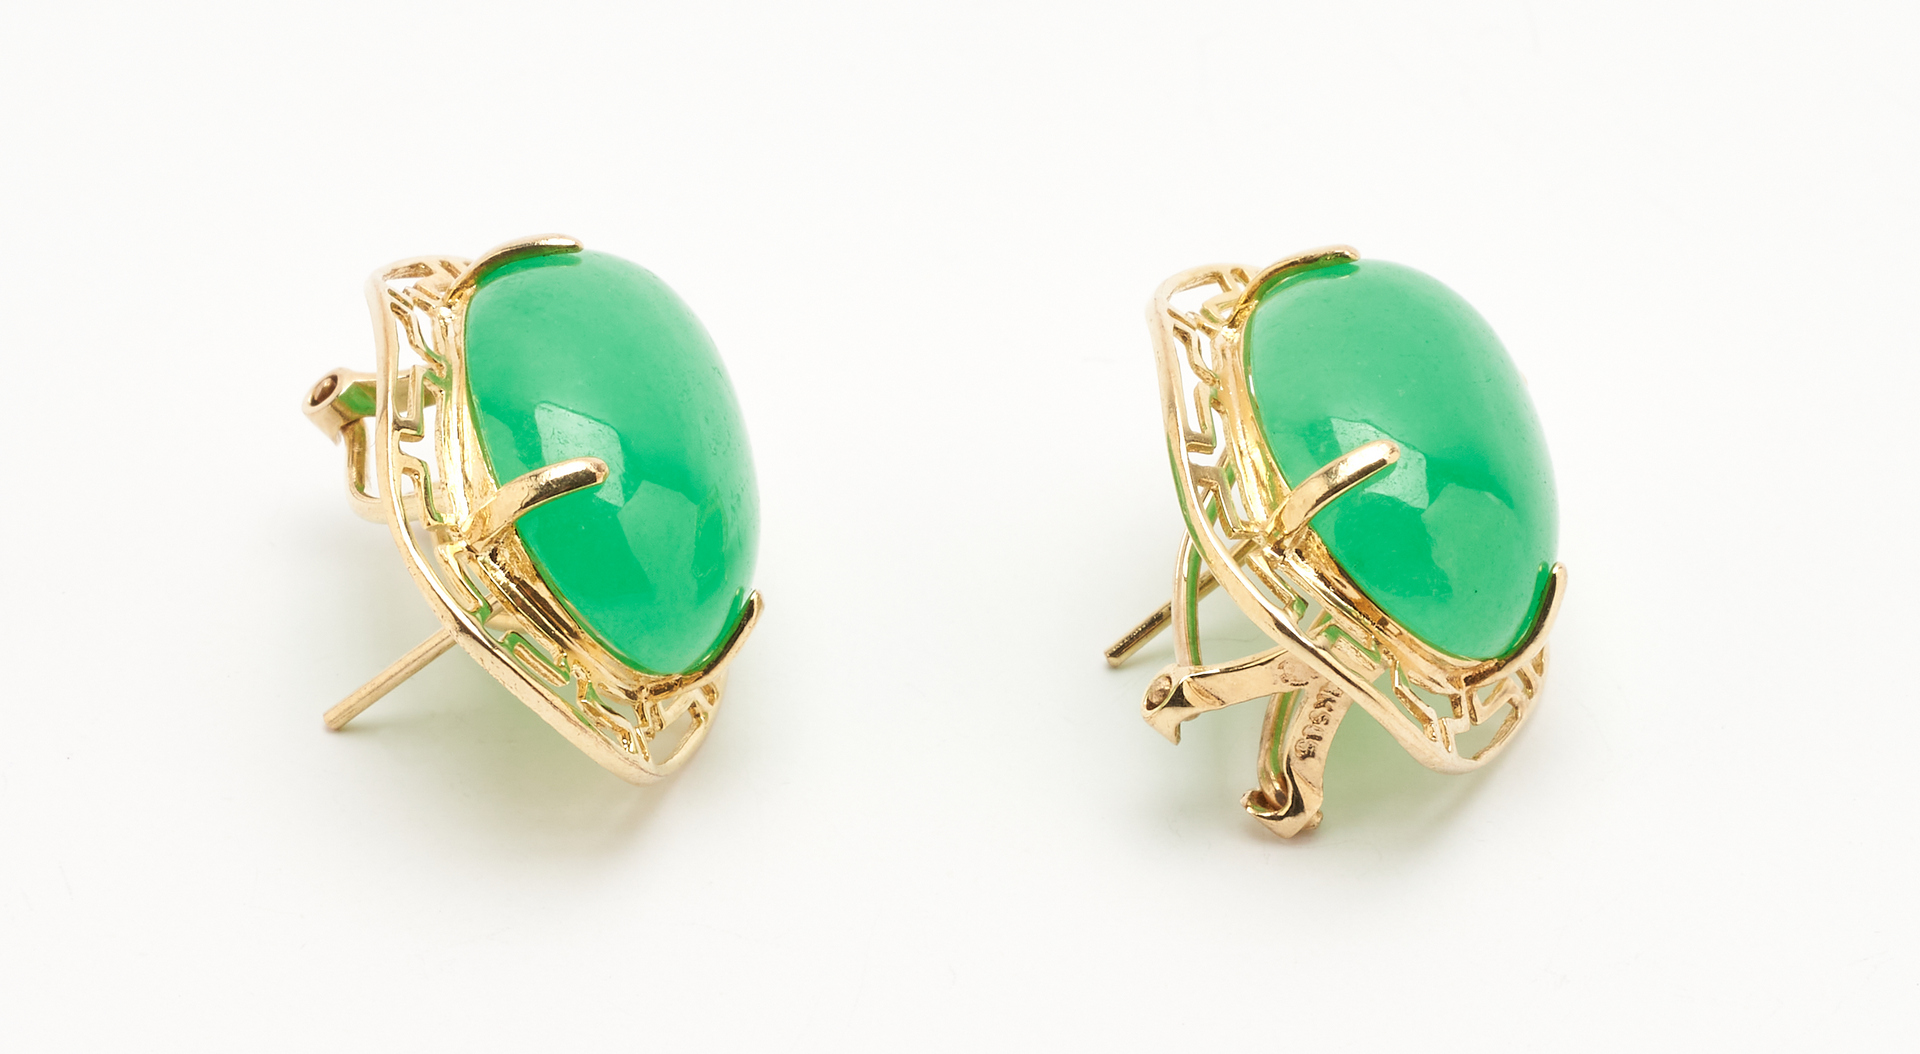 Lot 435: Jade & 14K Gold Bracelet with Earrings